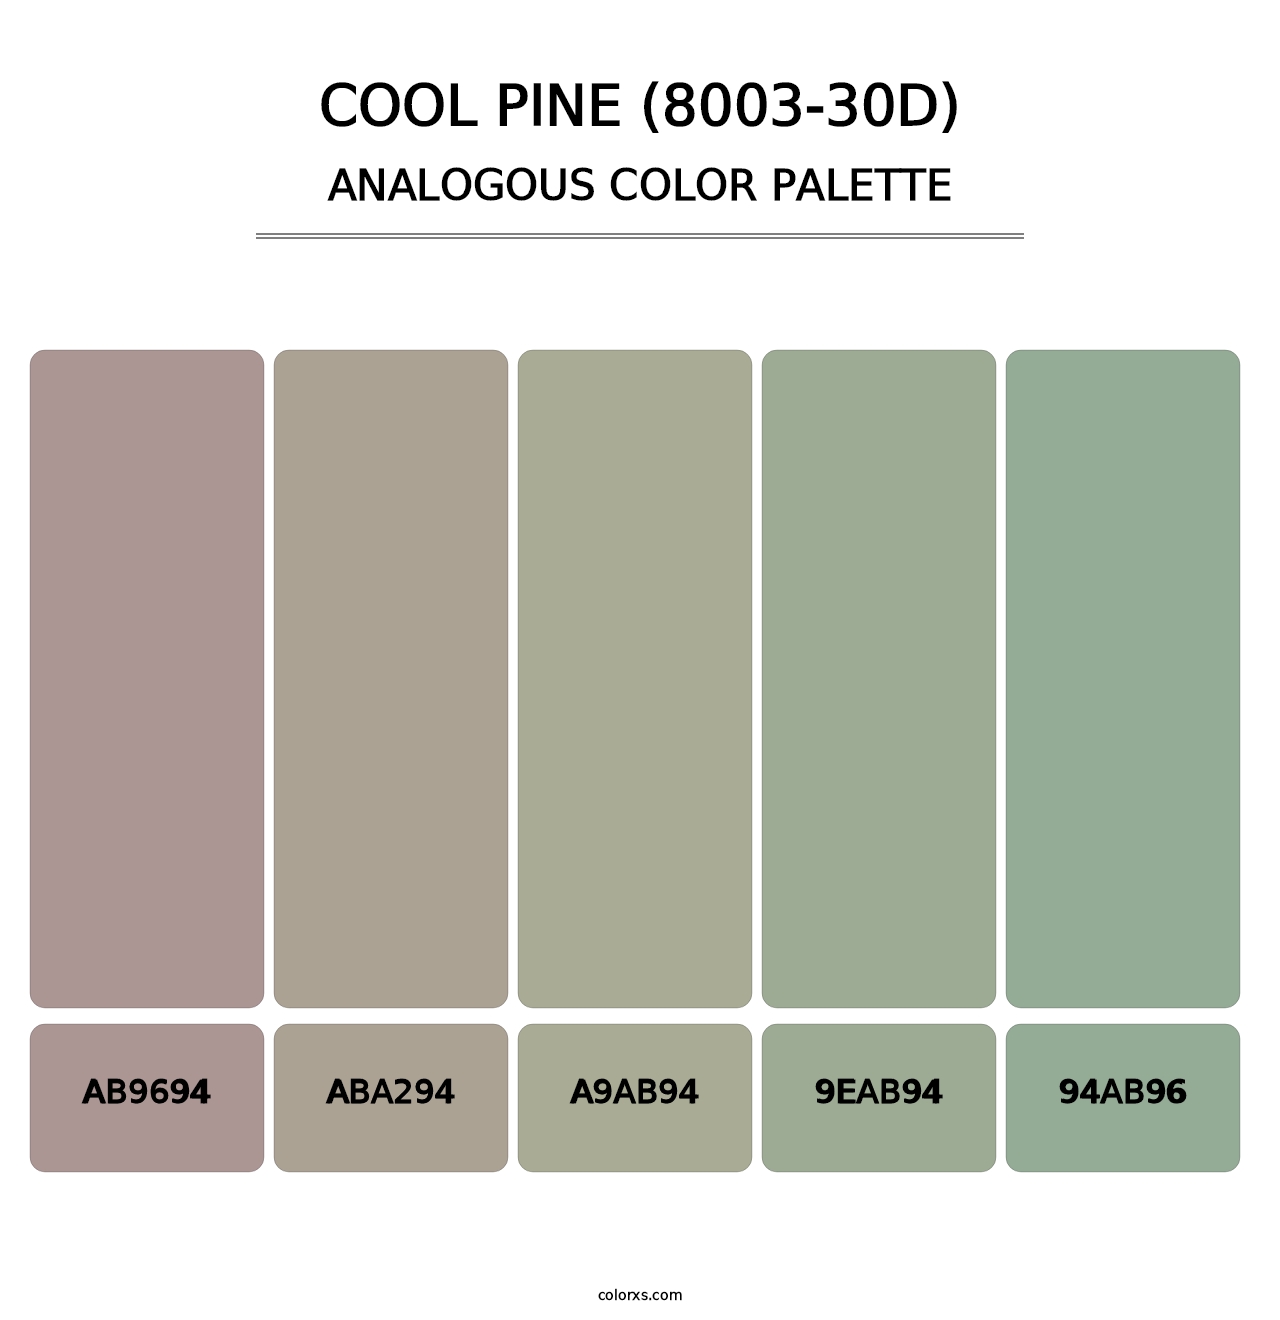 Cool Pine (8003-30D) - Analogous Color Palette